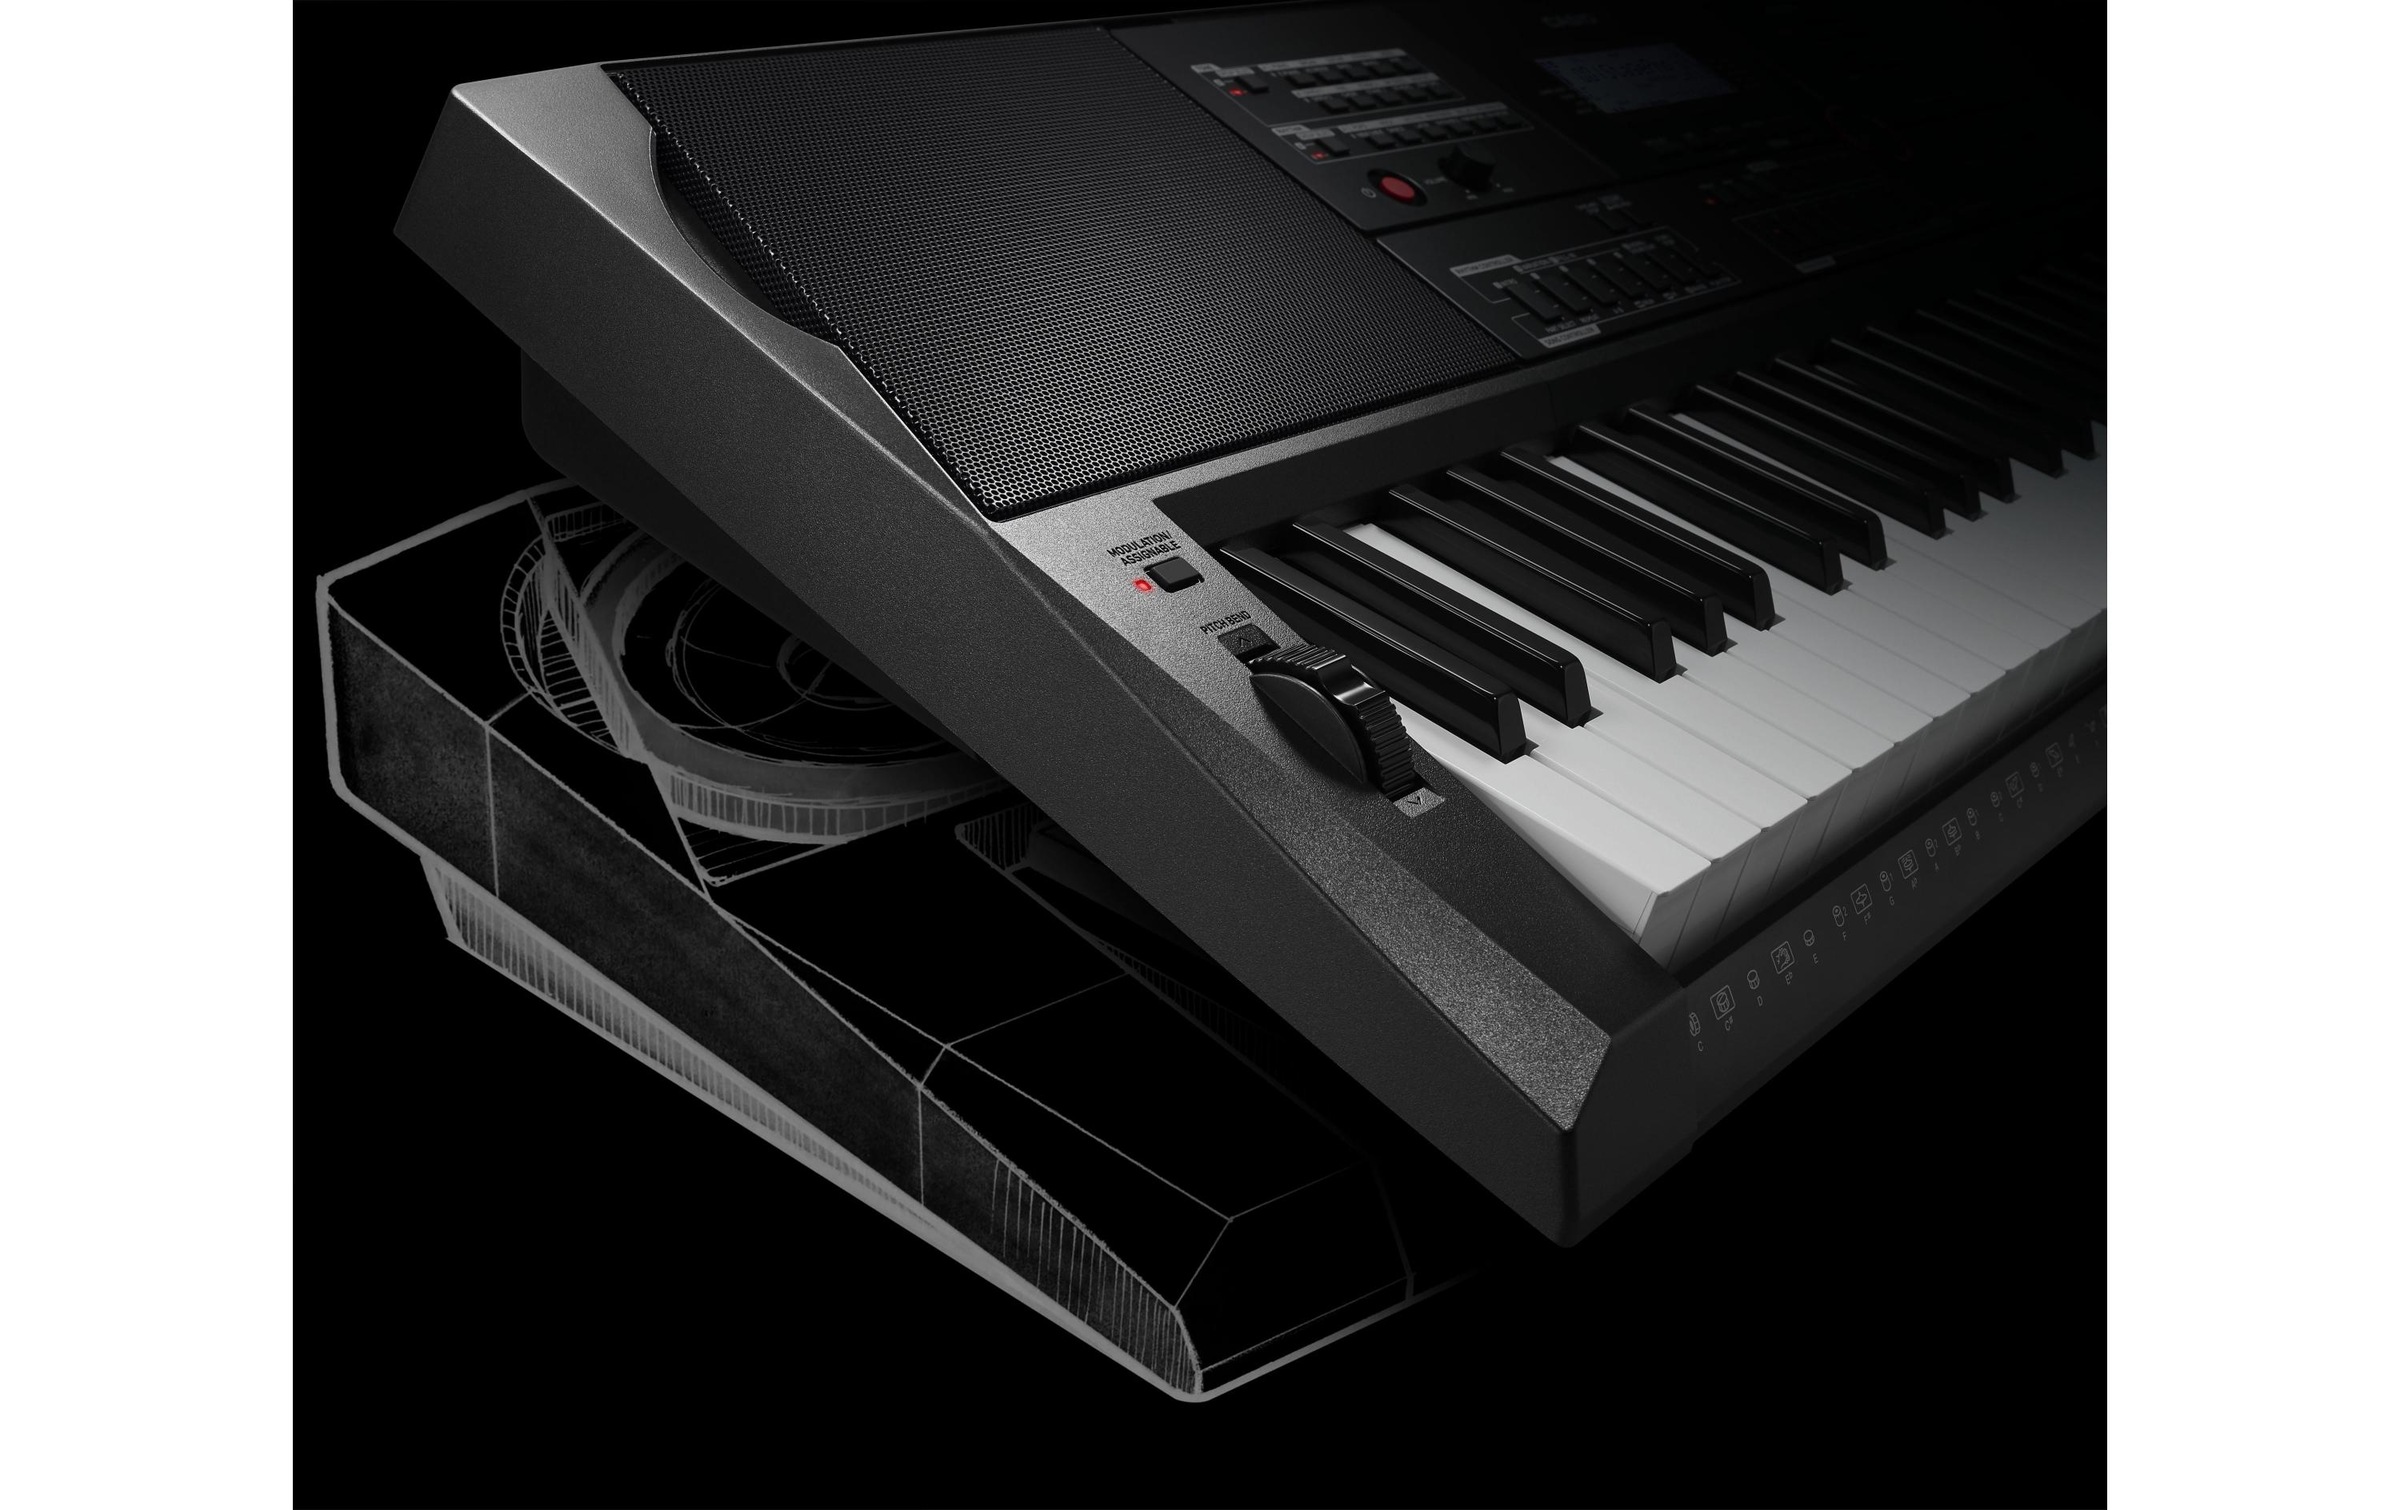 CASIO Keyboard »CT-X5000«